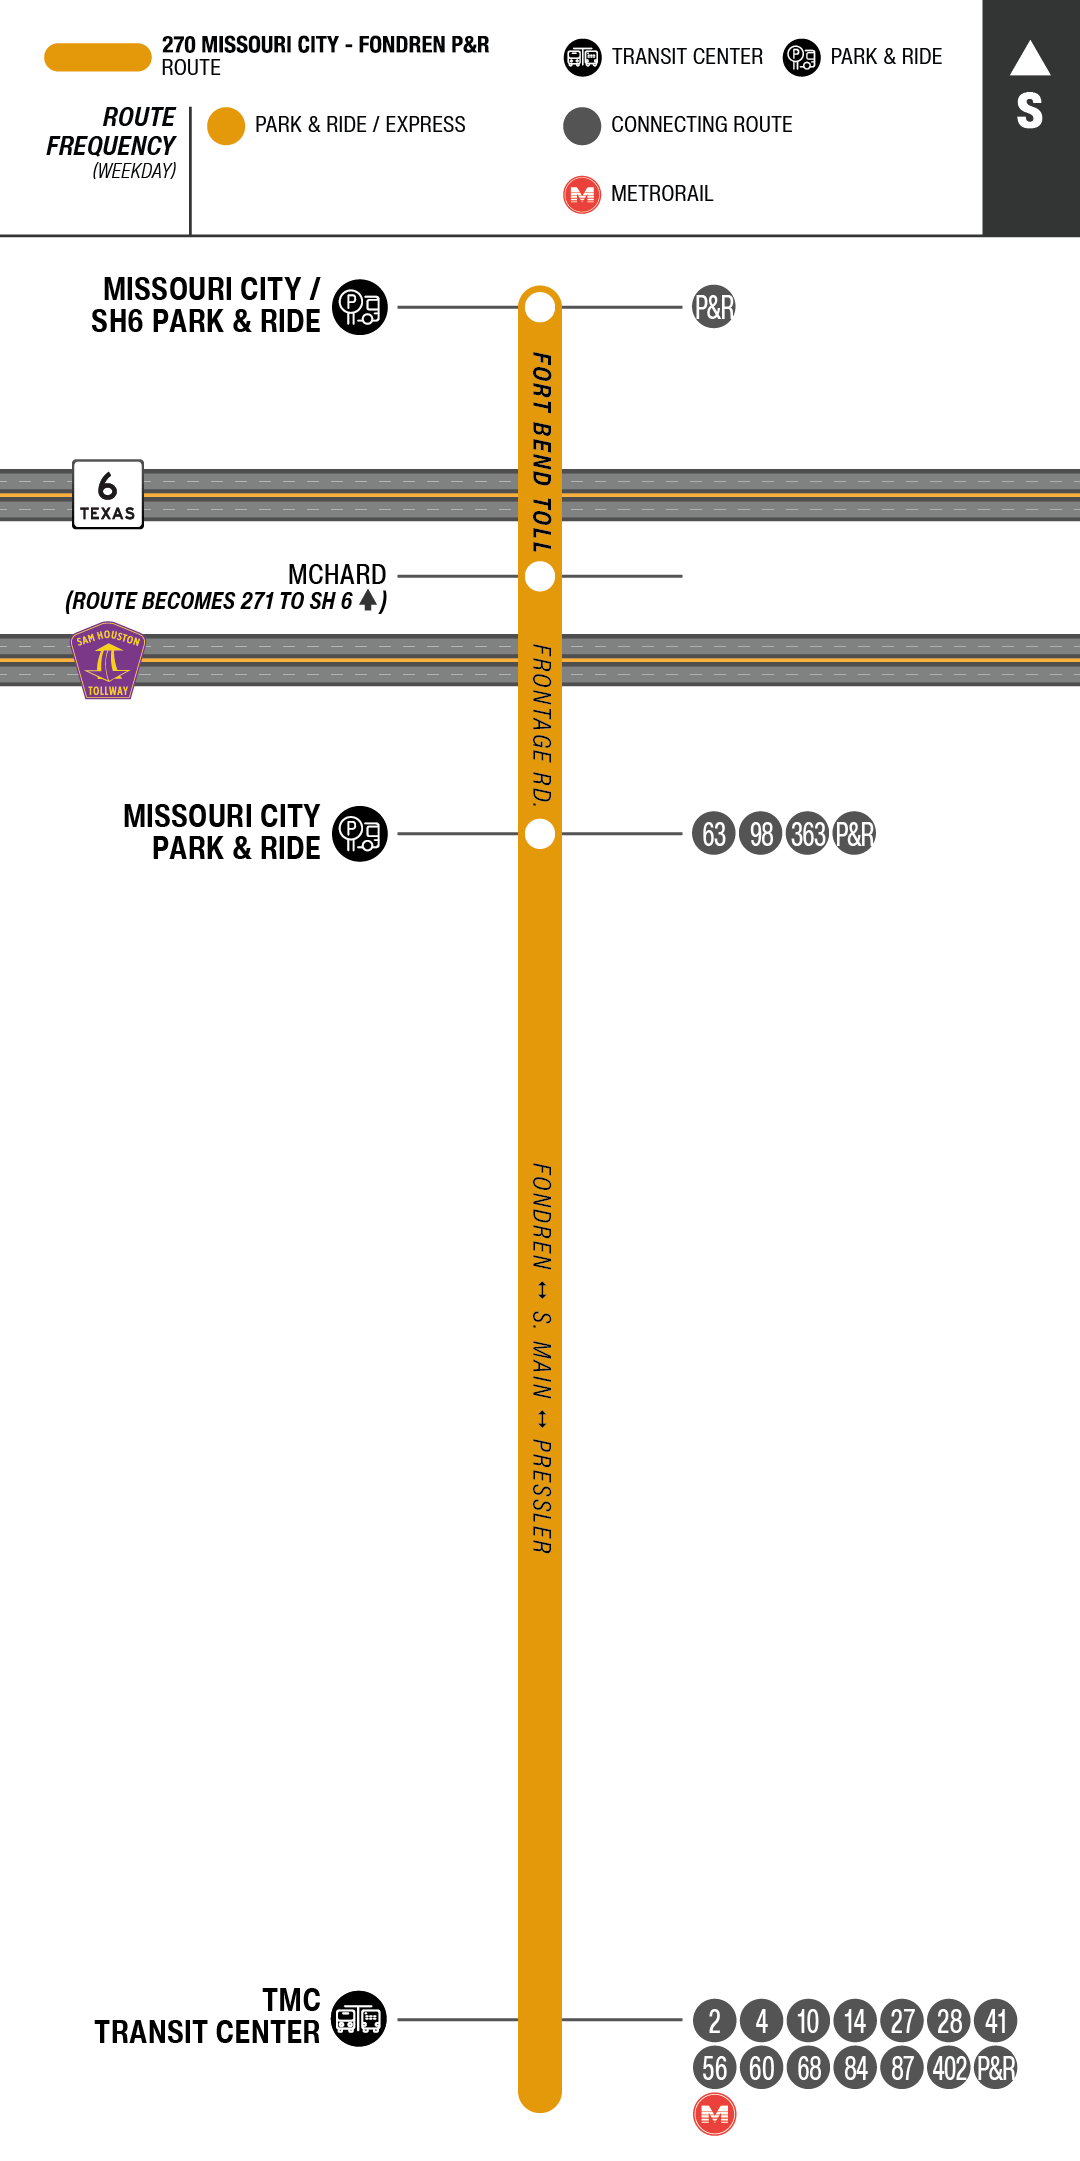 Route map for 270 Missouri City - Fondren Park & Ride bus